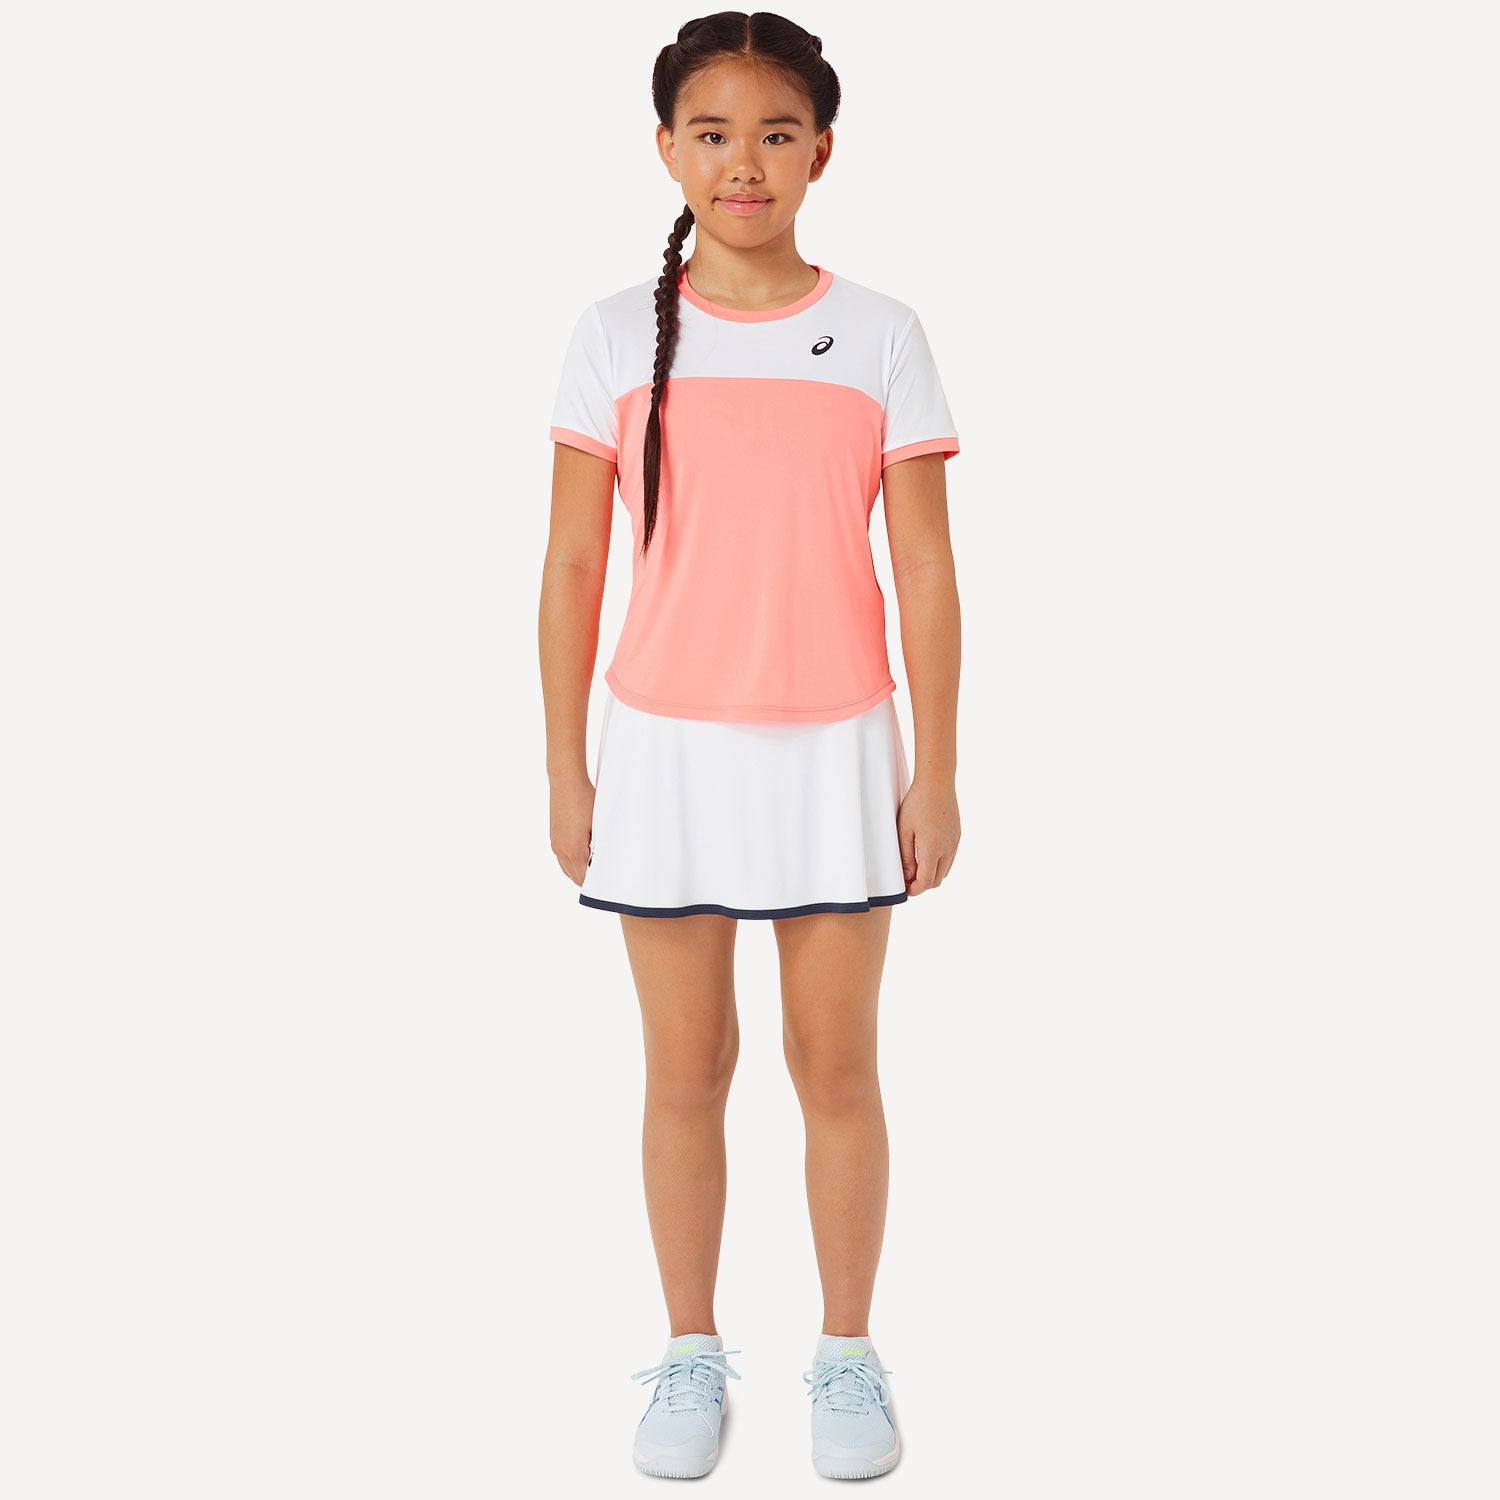 ASICS Girls' Tennis Shirt Orange (5)